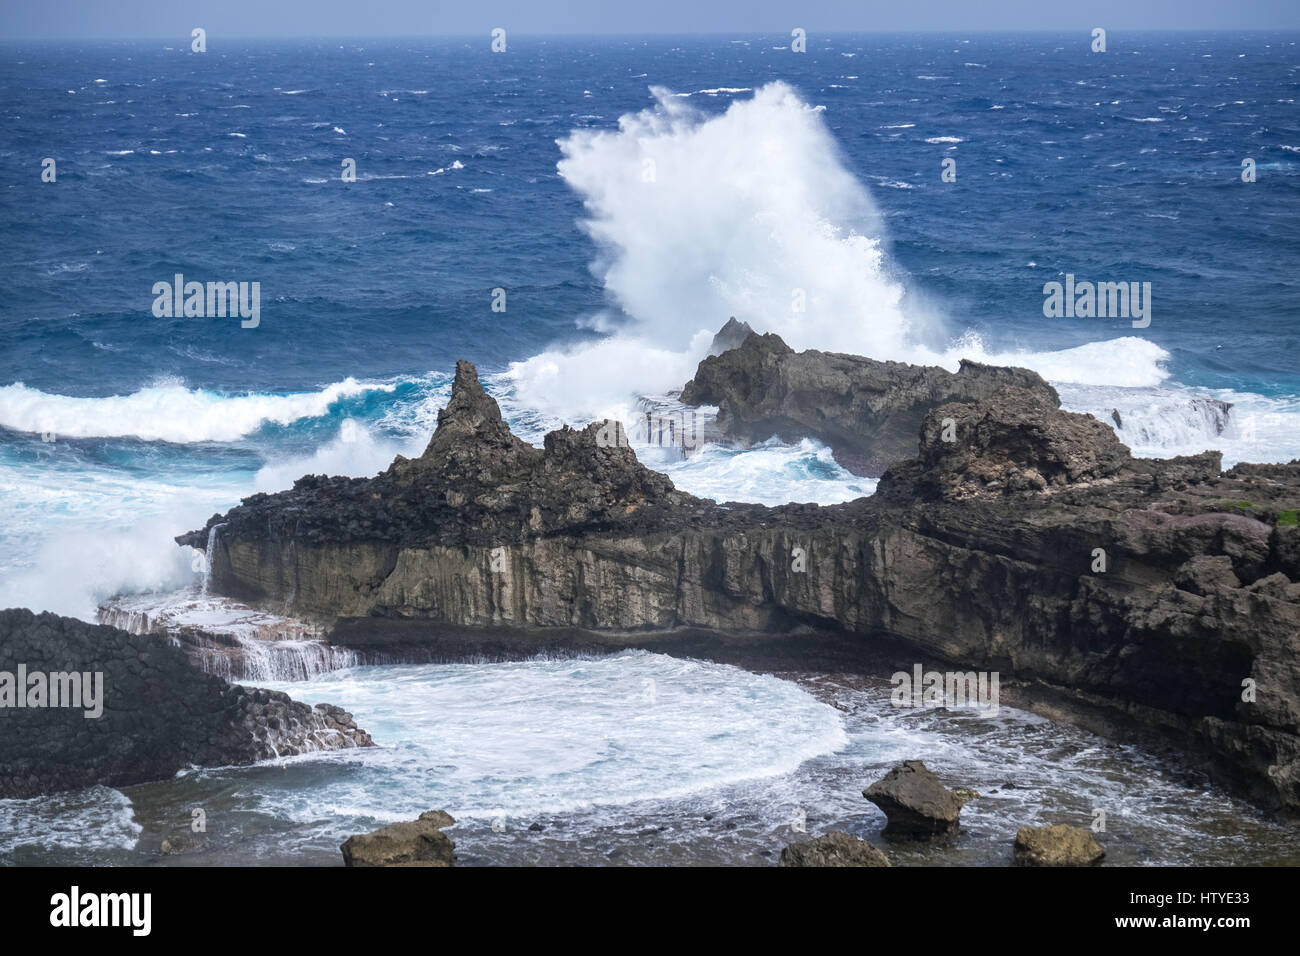 Waves crashing on rocks, Batanes, Philippines Stock Photo